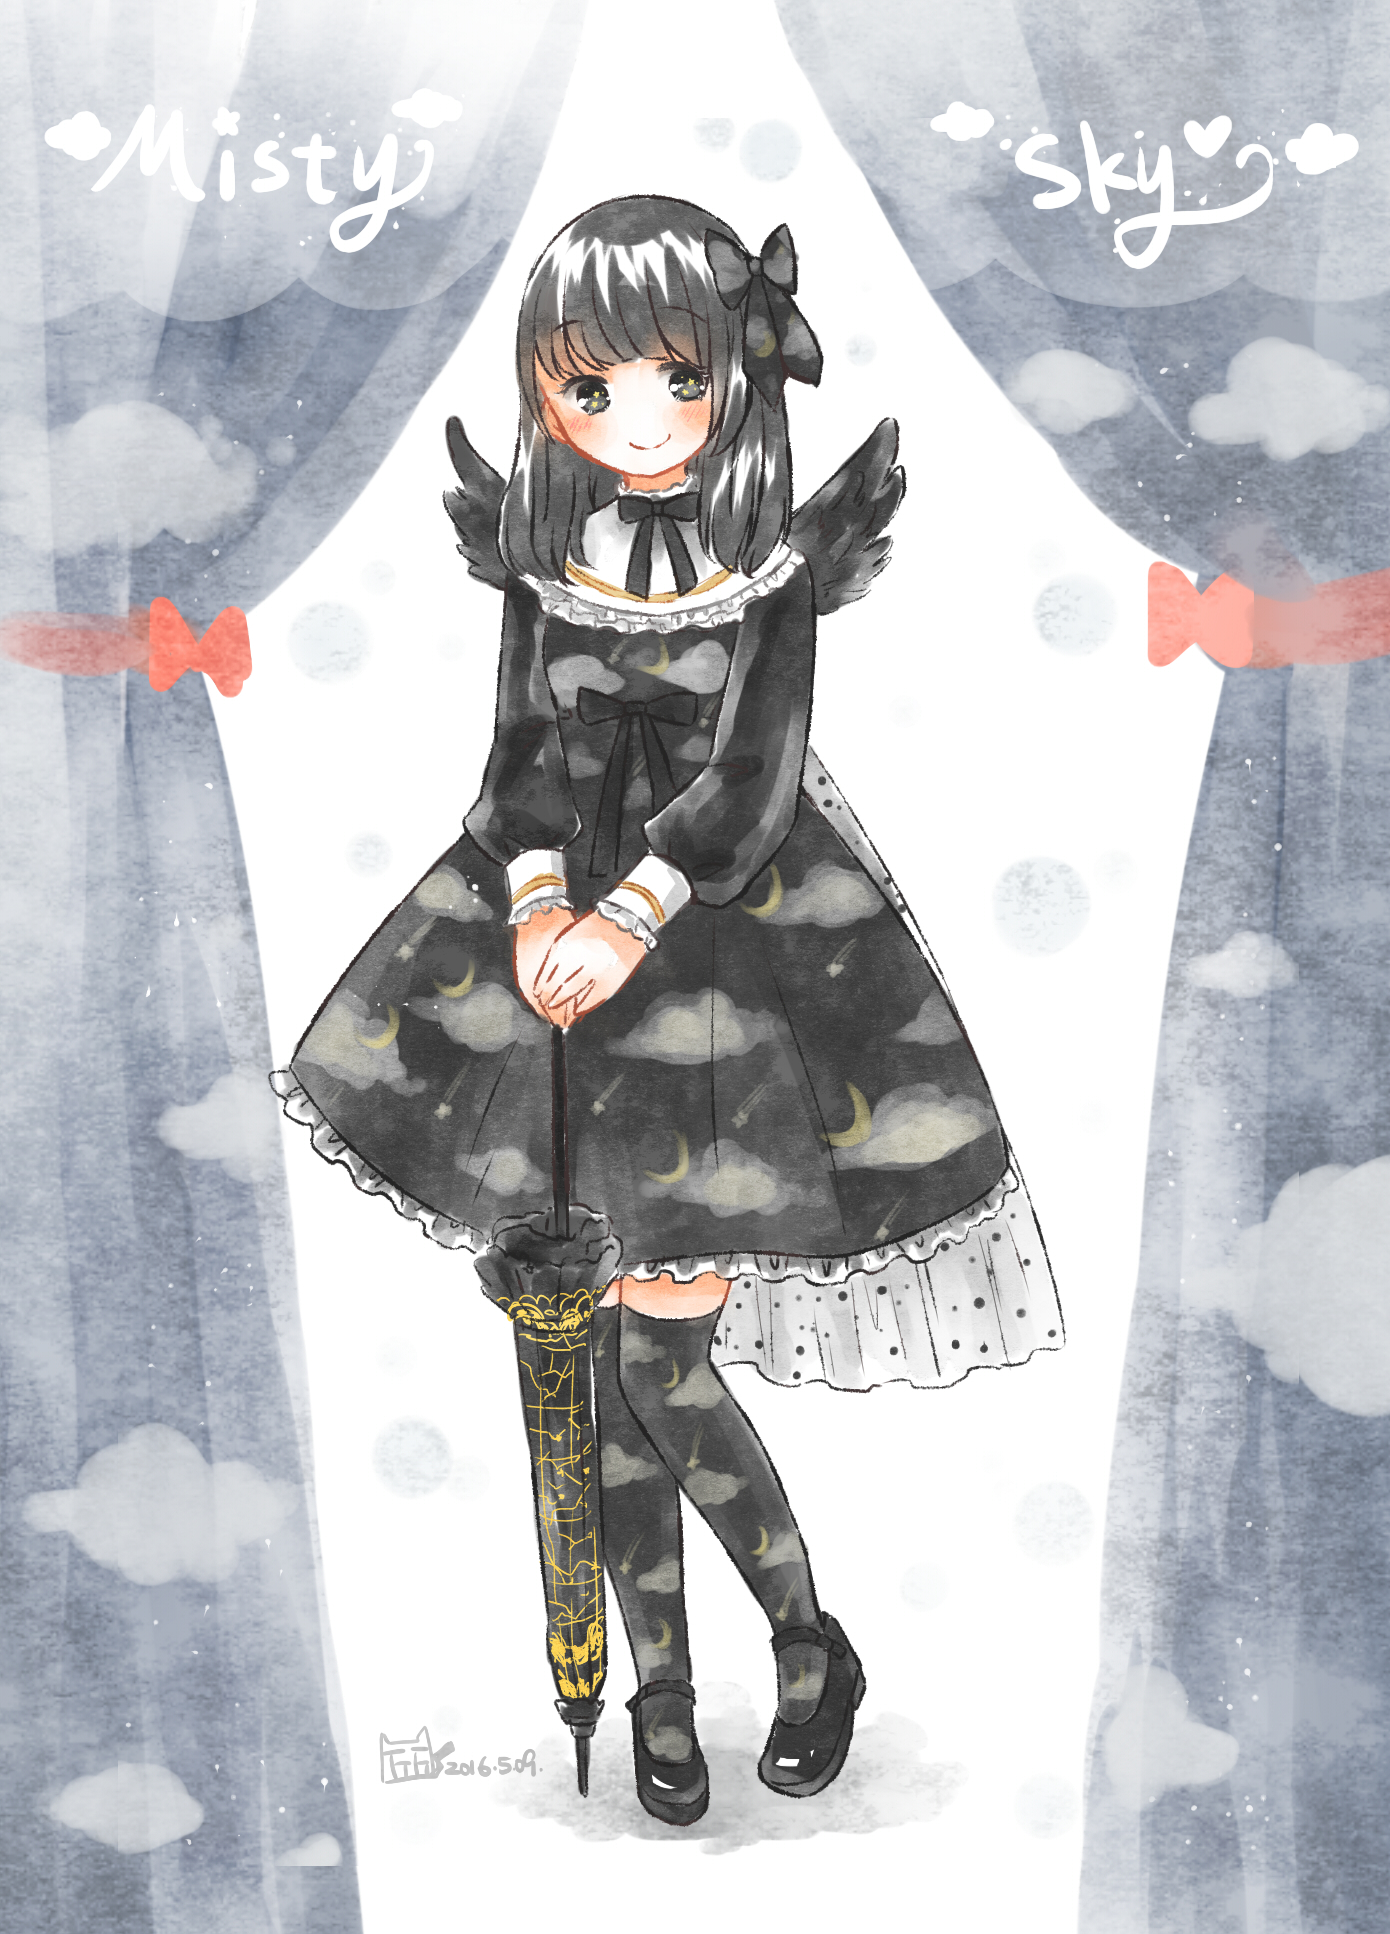 Angelic Pretty's Misty Sky in Black [Original] : r/awwnime